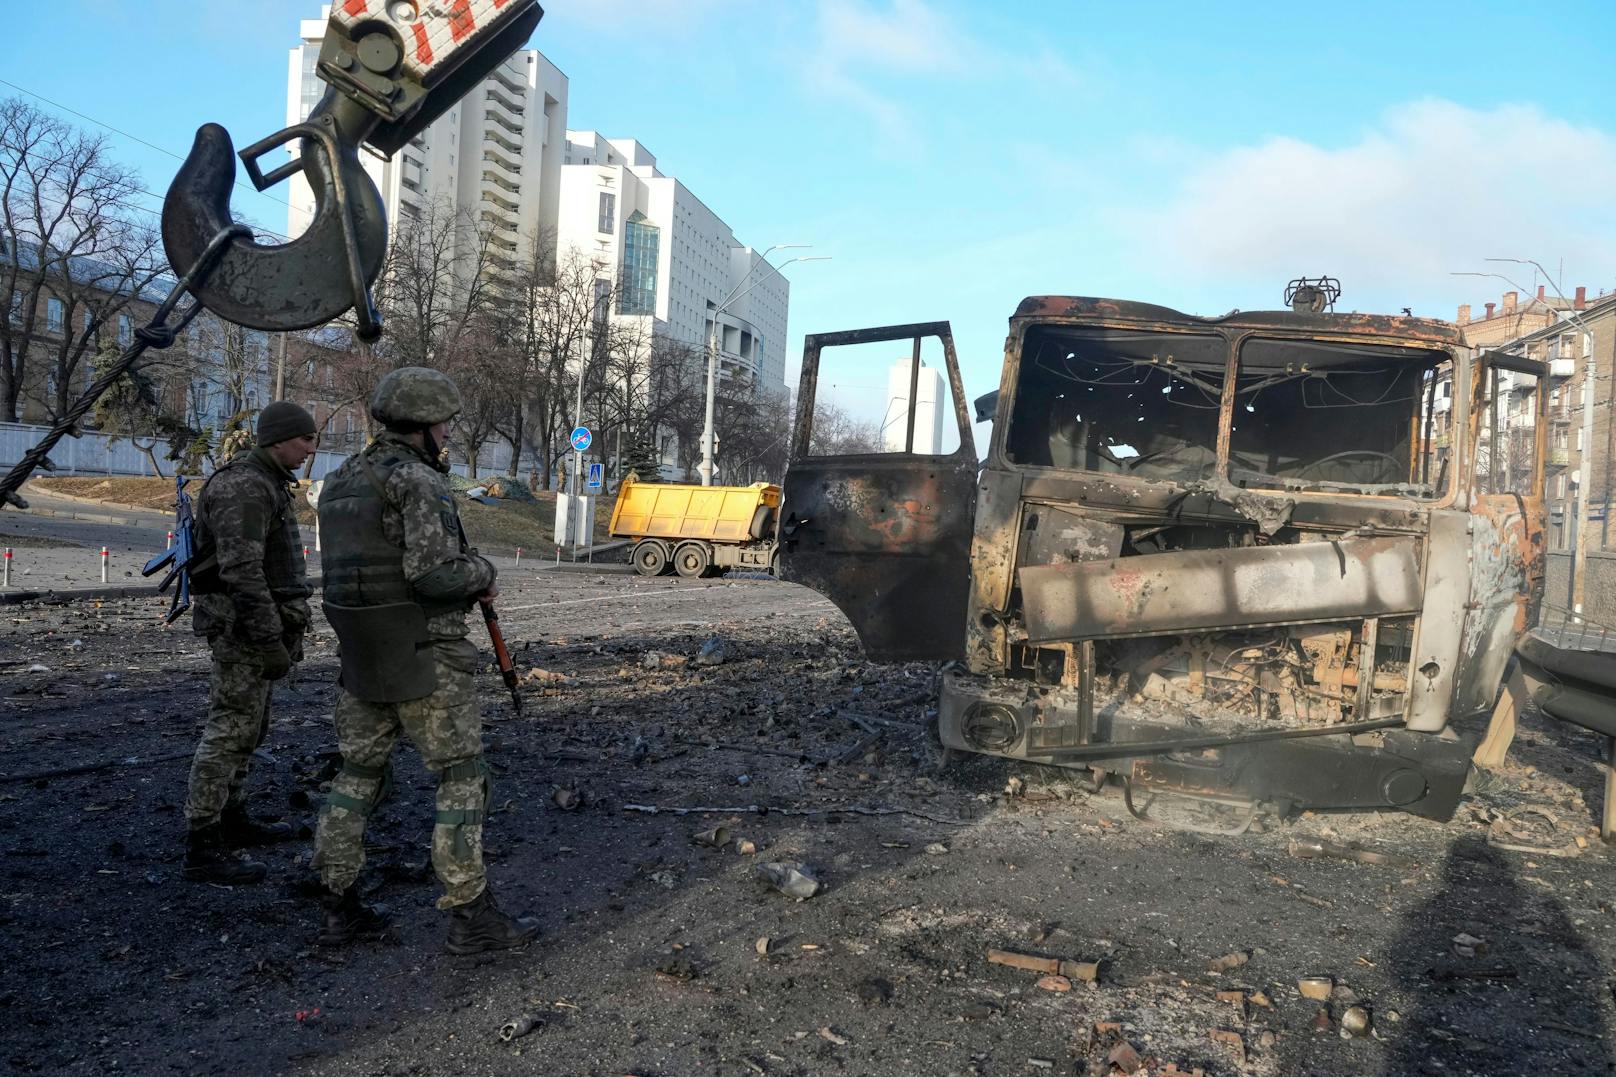 Ukrainische Soldaten vor einem ausgebrannten Fahrzeug in Kiew: Die Armee erwartet einen massiven Sturm der Russen auf die Hauptstadt.